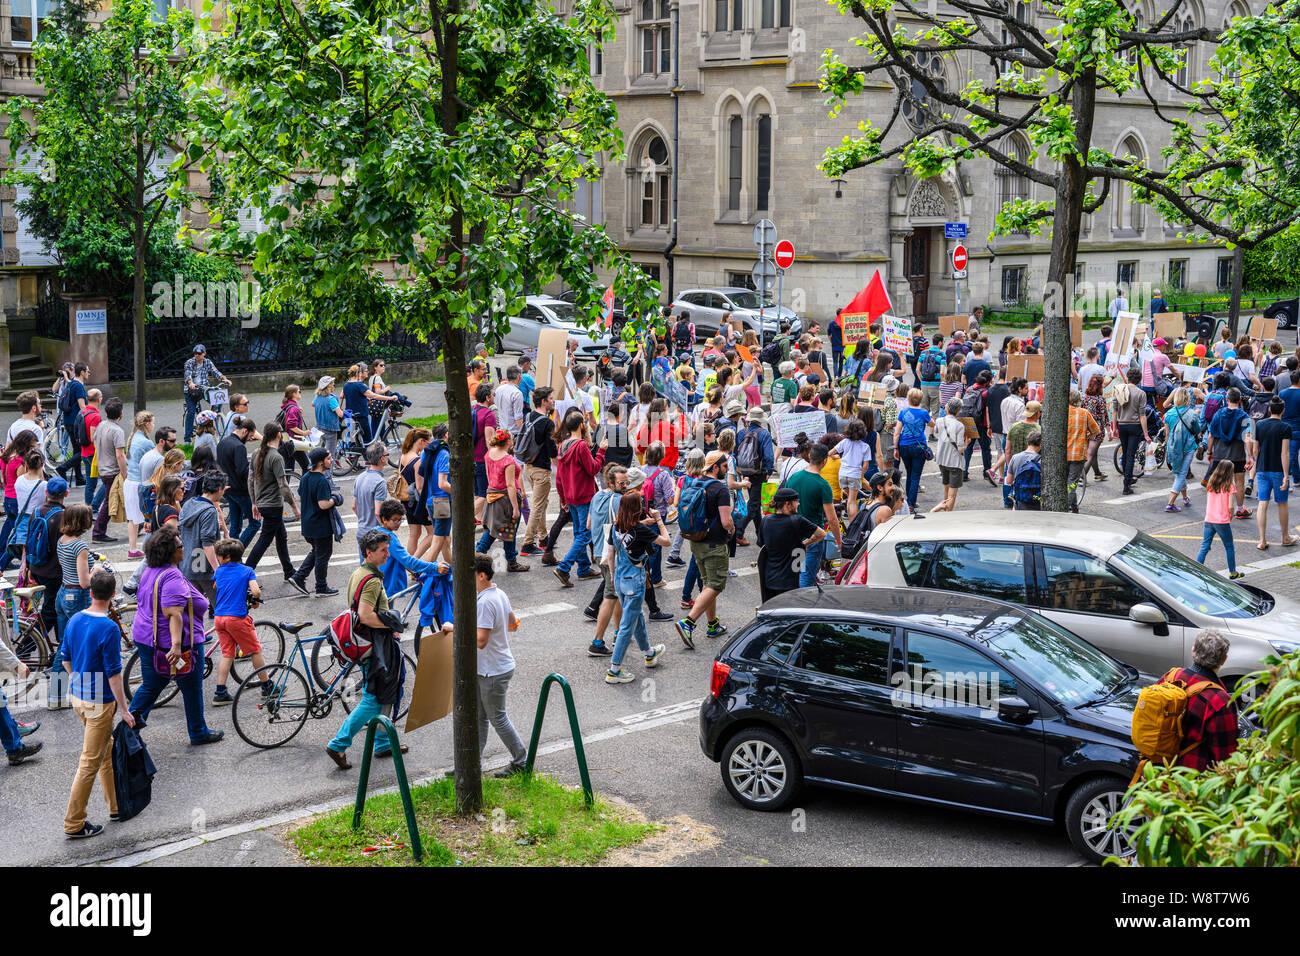 25 mai 2019, marche de protestation contre le réchauffement climatique, Strasbourg, Alsace, France, Europe, Banque D'Images